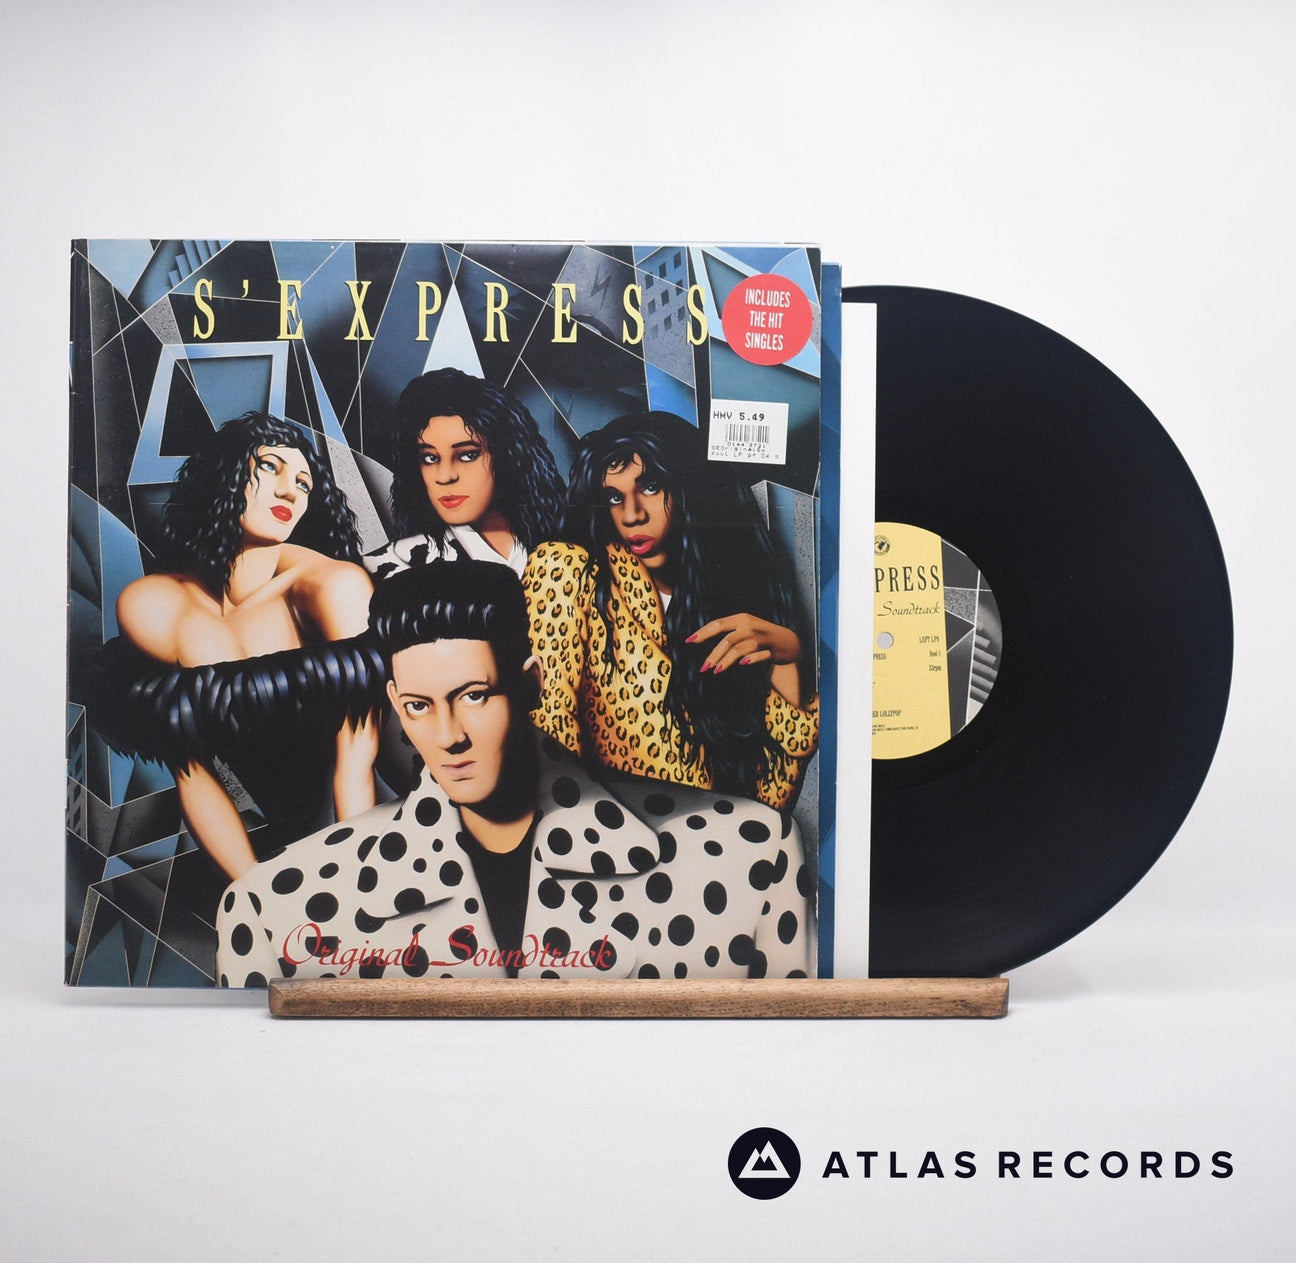 S'Express Original Soundtrack LP Vinyl Record - Front Cover & Record